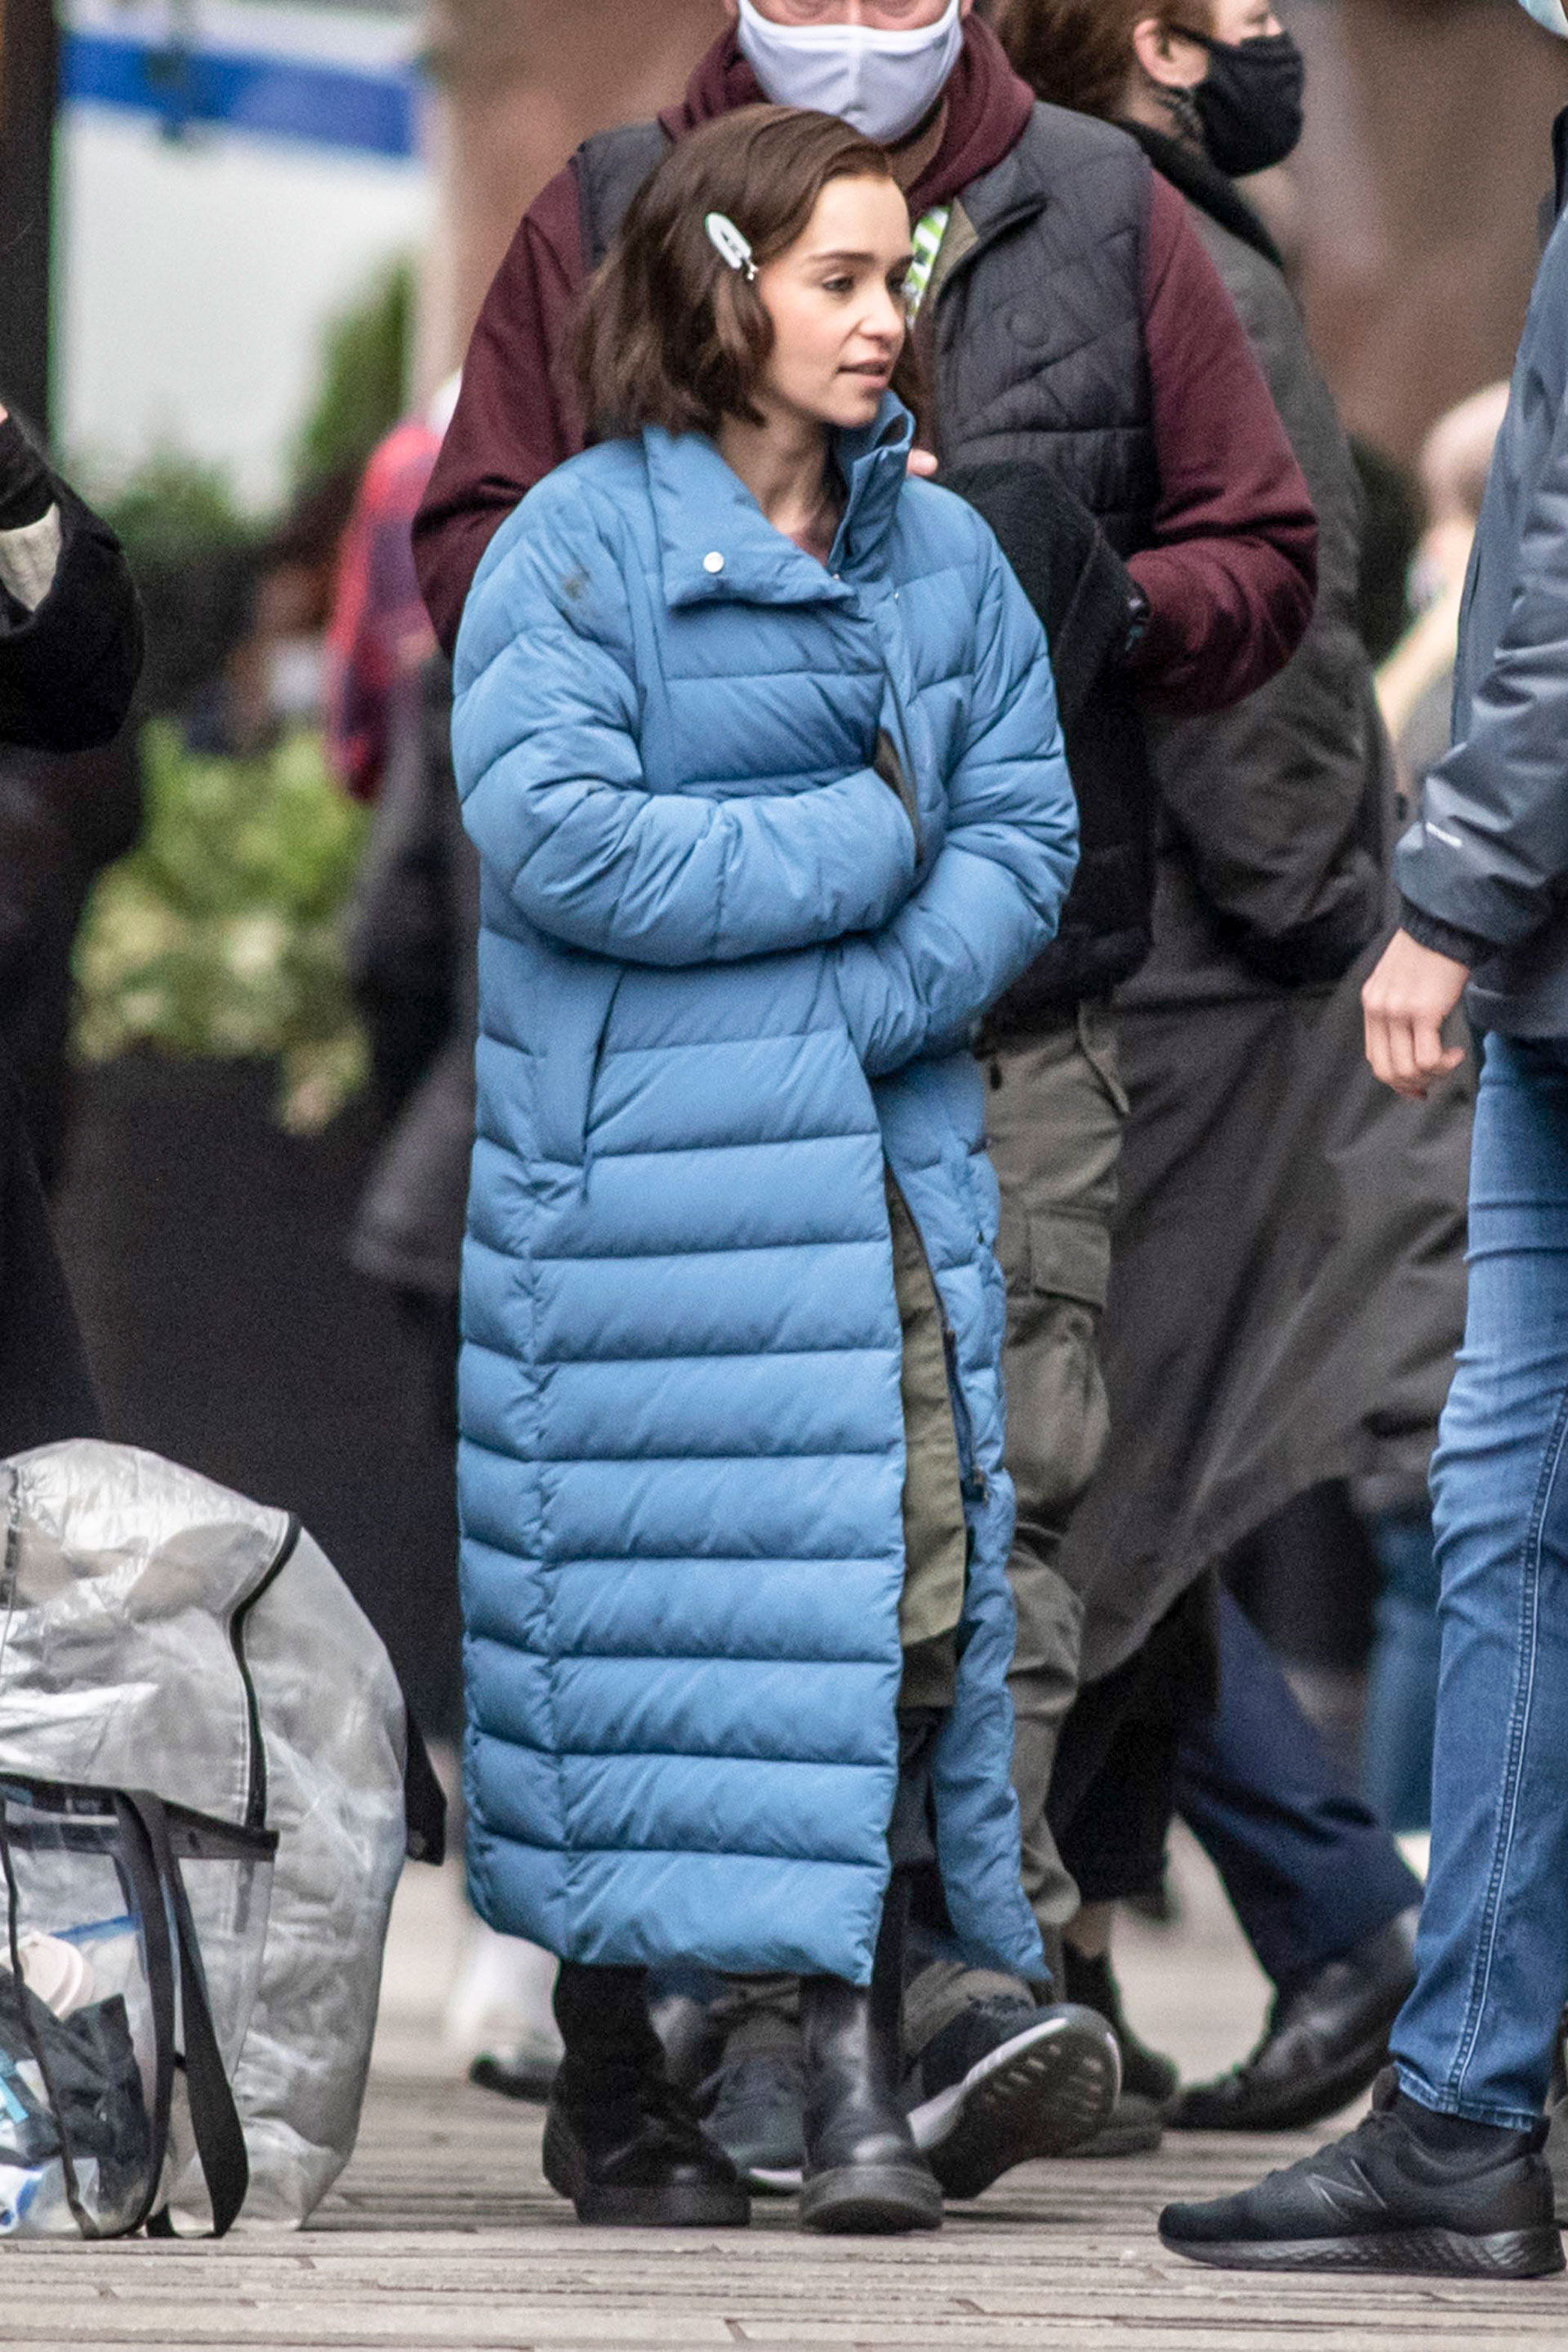 Día de trabajo. Emilia Clarke fue fotografiada en el set de filmación de "Secret Invasion", serie que realiza junto a Samuel L. Jackson. El rodaje se lleva a cabo en Leeds, Inglaterra (Fotos: The Grosby Group)